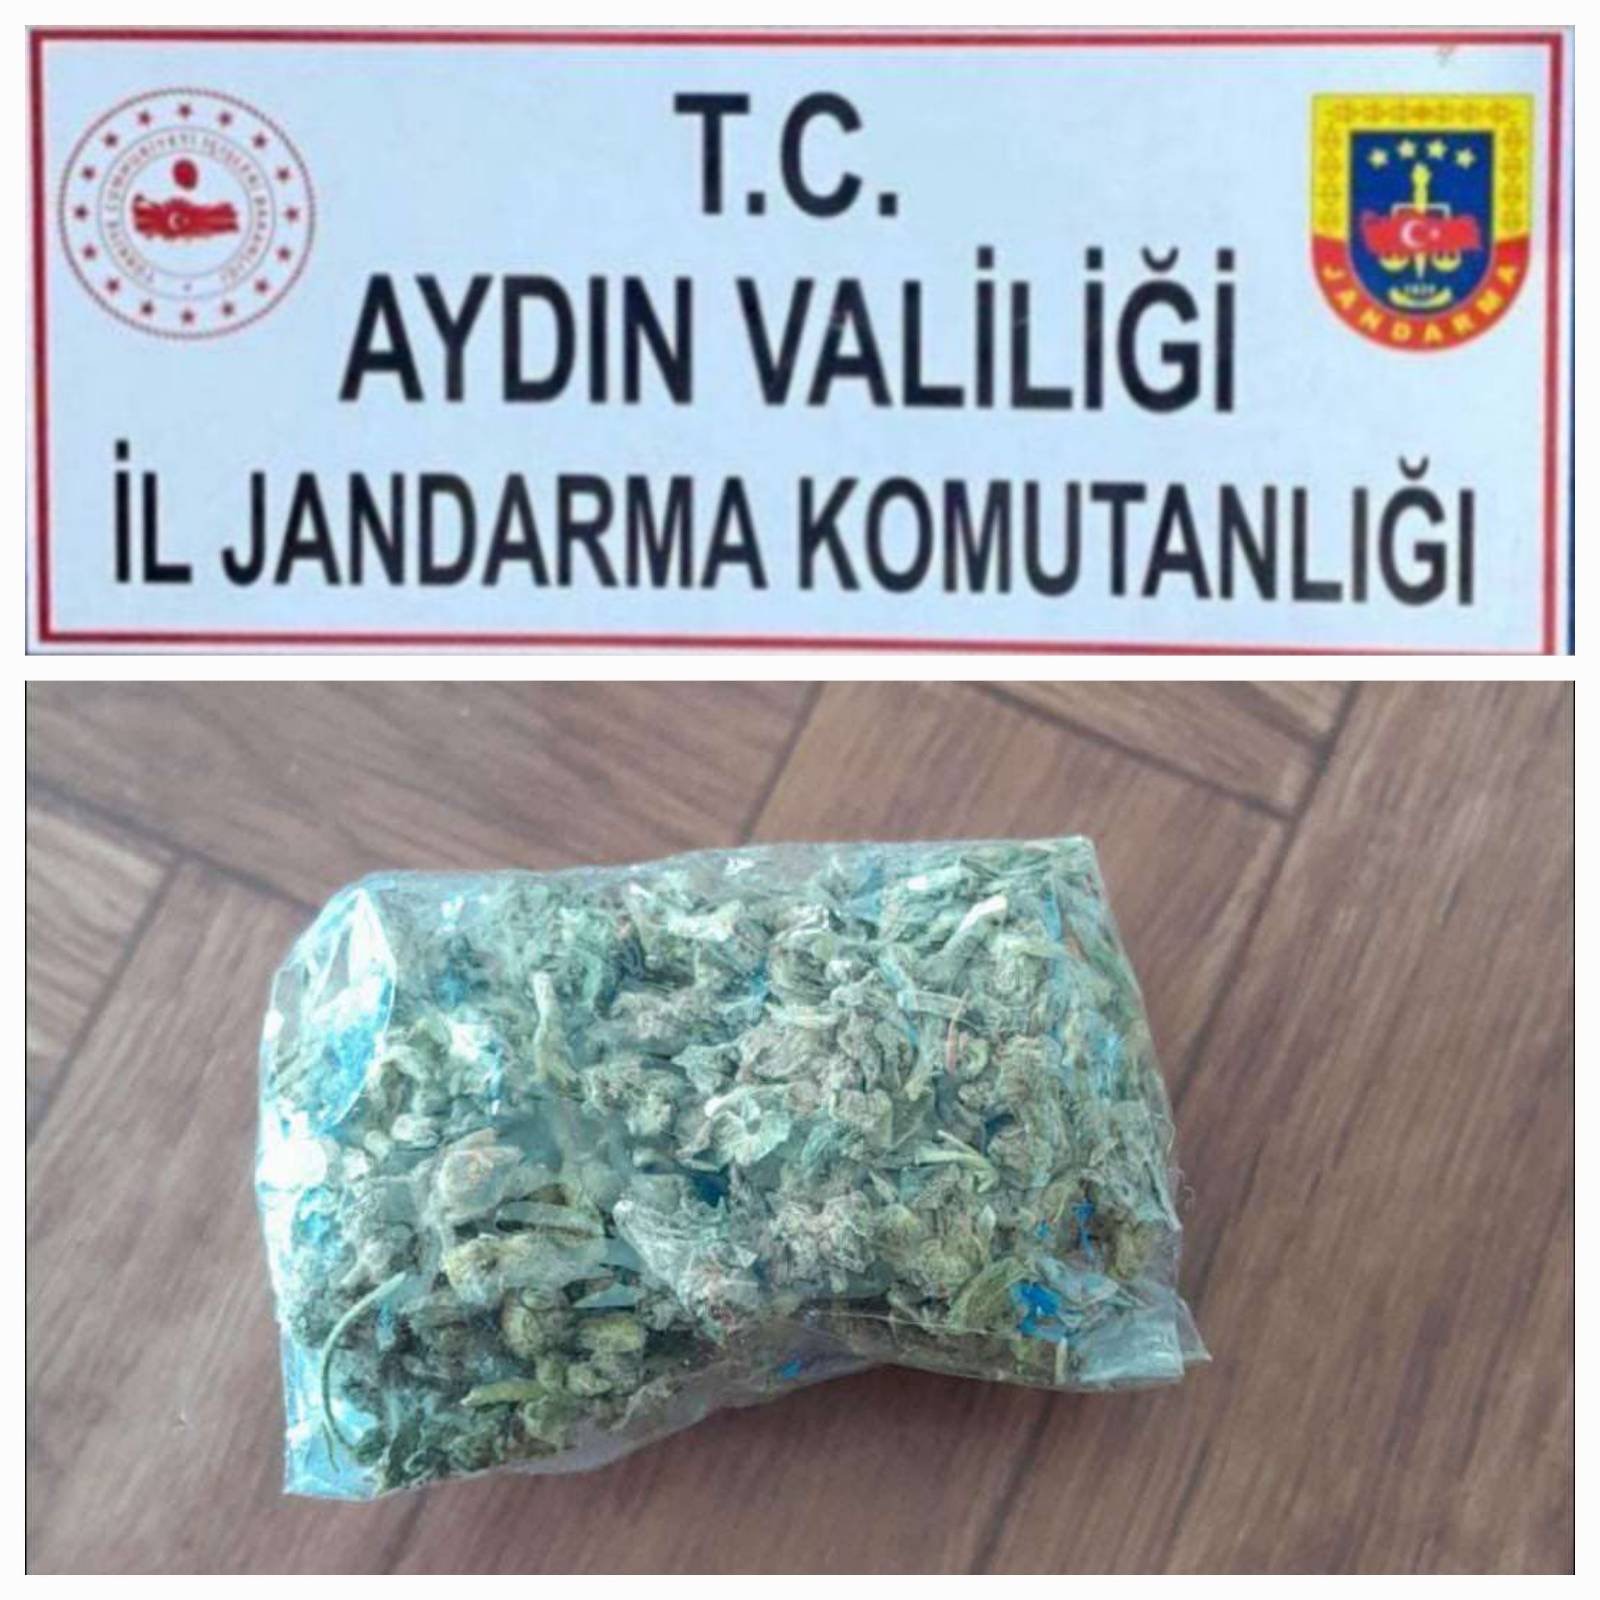 Aydın'da yolcu otobüsünde uyuşturucu ele geçirildi